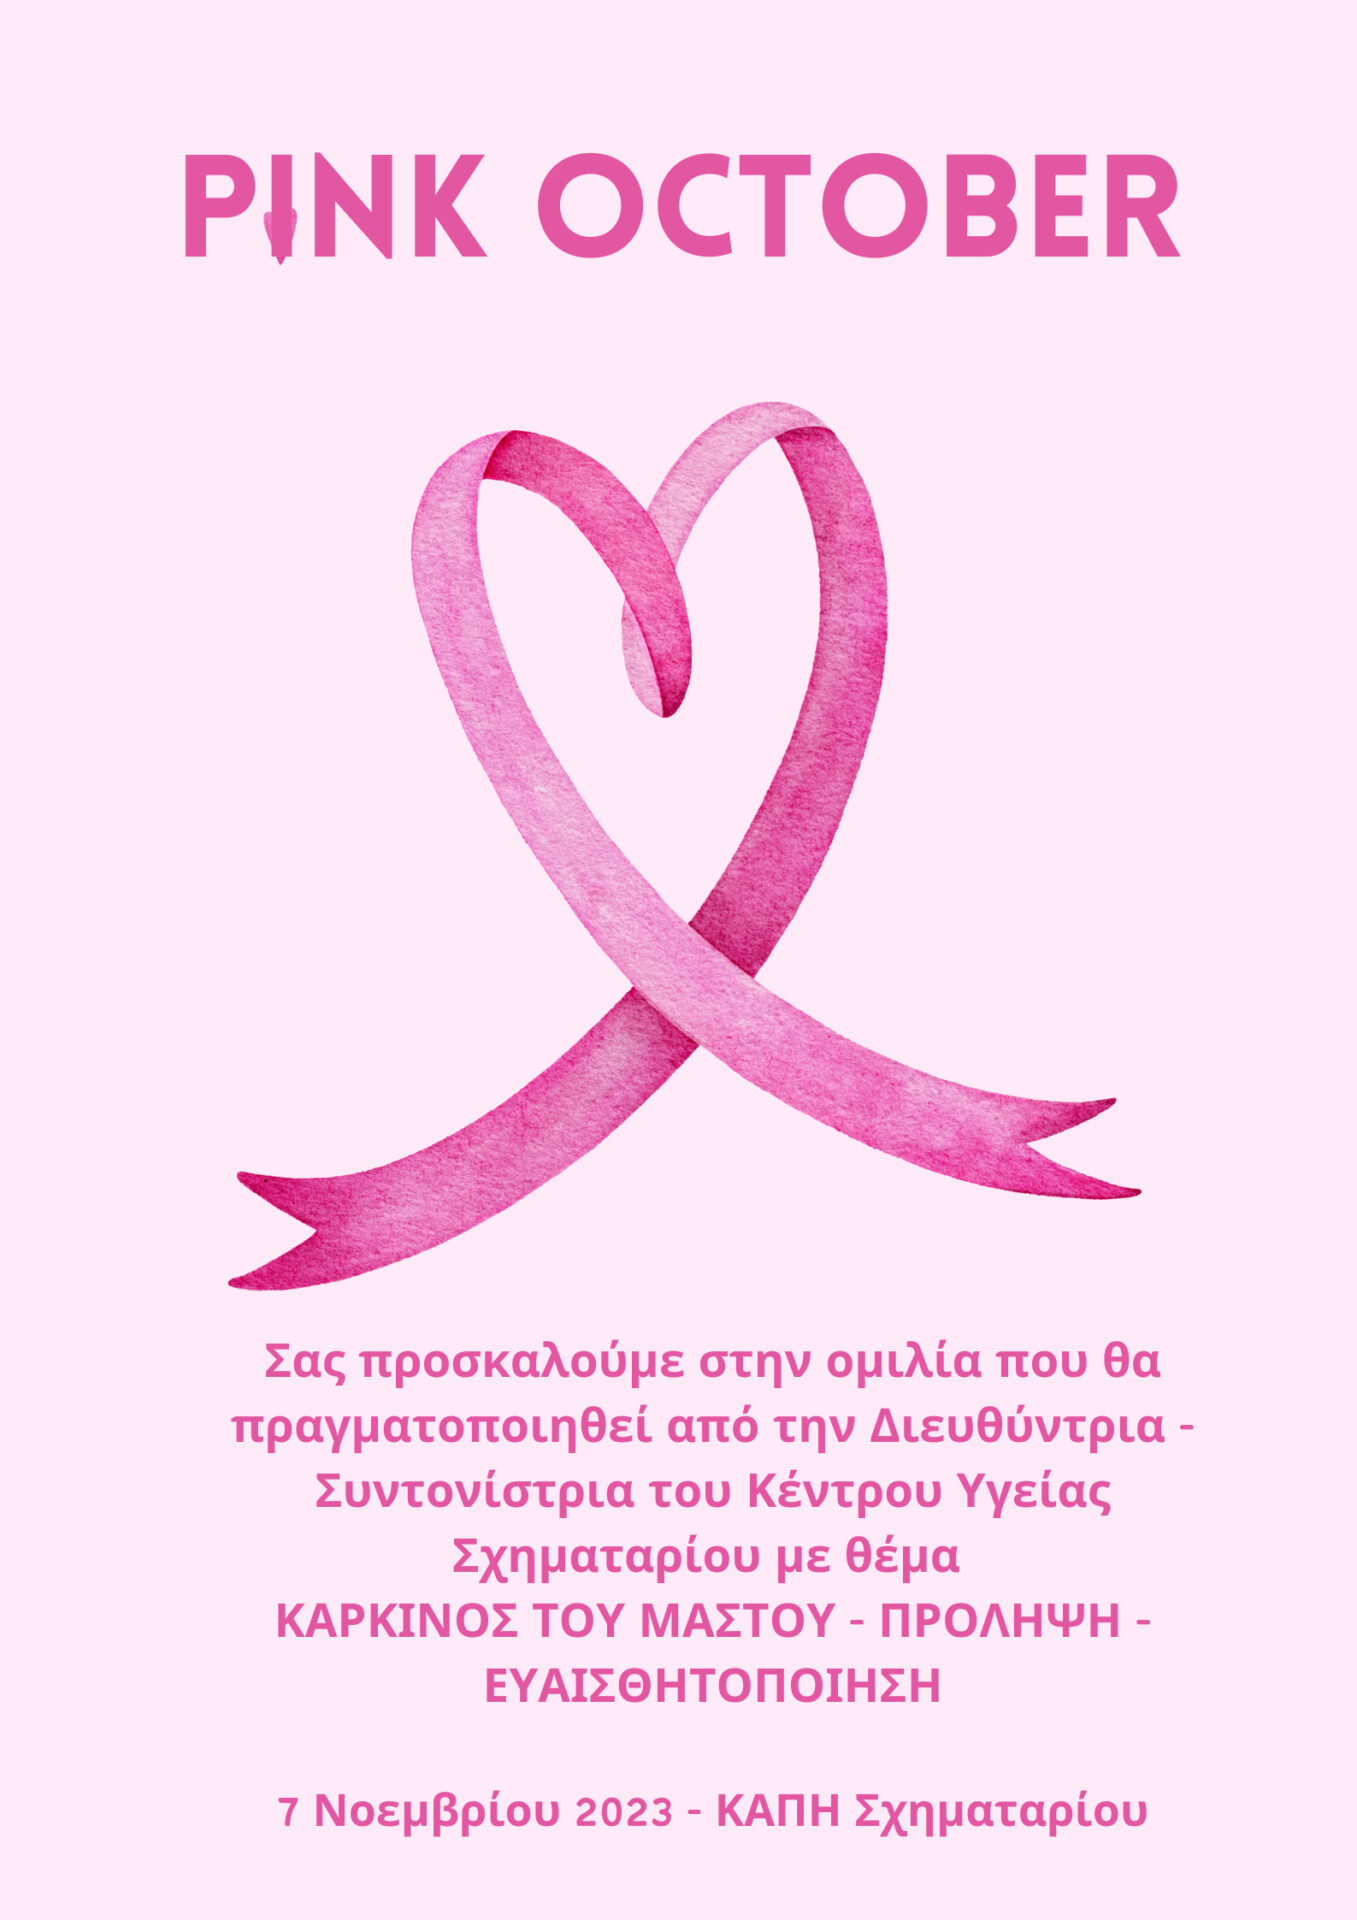 Ομιλία με Θέμα “Καρκίνος του μαστού – Πρόληψη – Ευαισθητοποίηση” στο ΚΑΠΗ Σχηματαρίου στις 7 Νοεμβρίου 2023 και ώρα 10:30